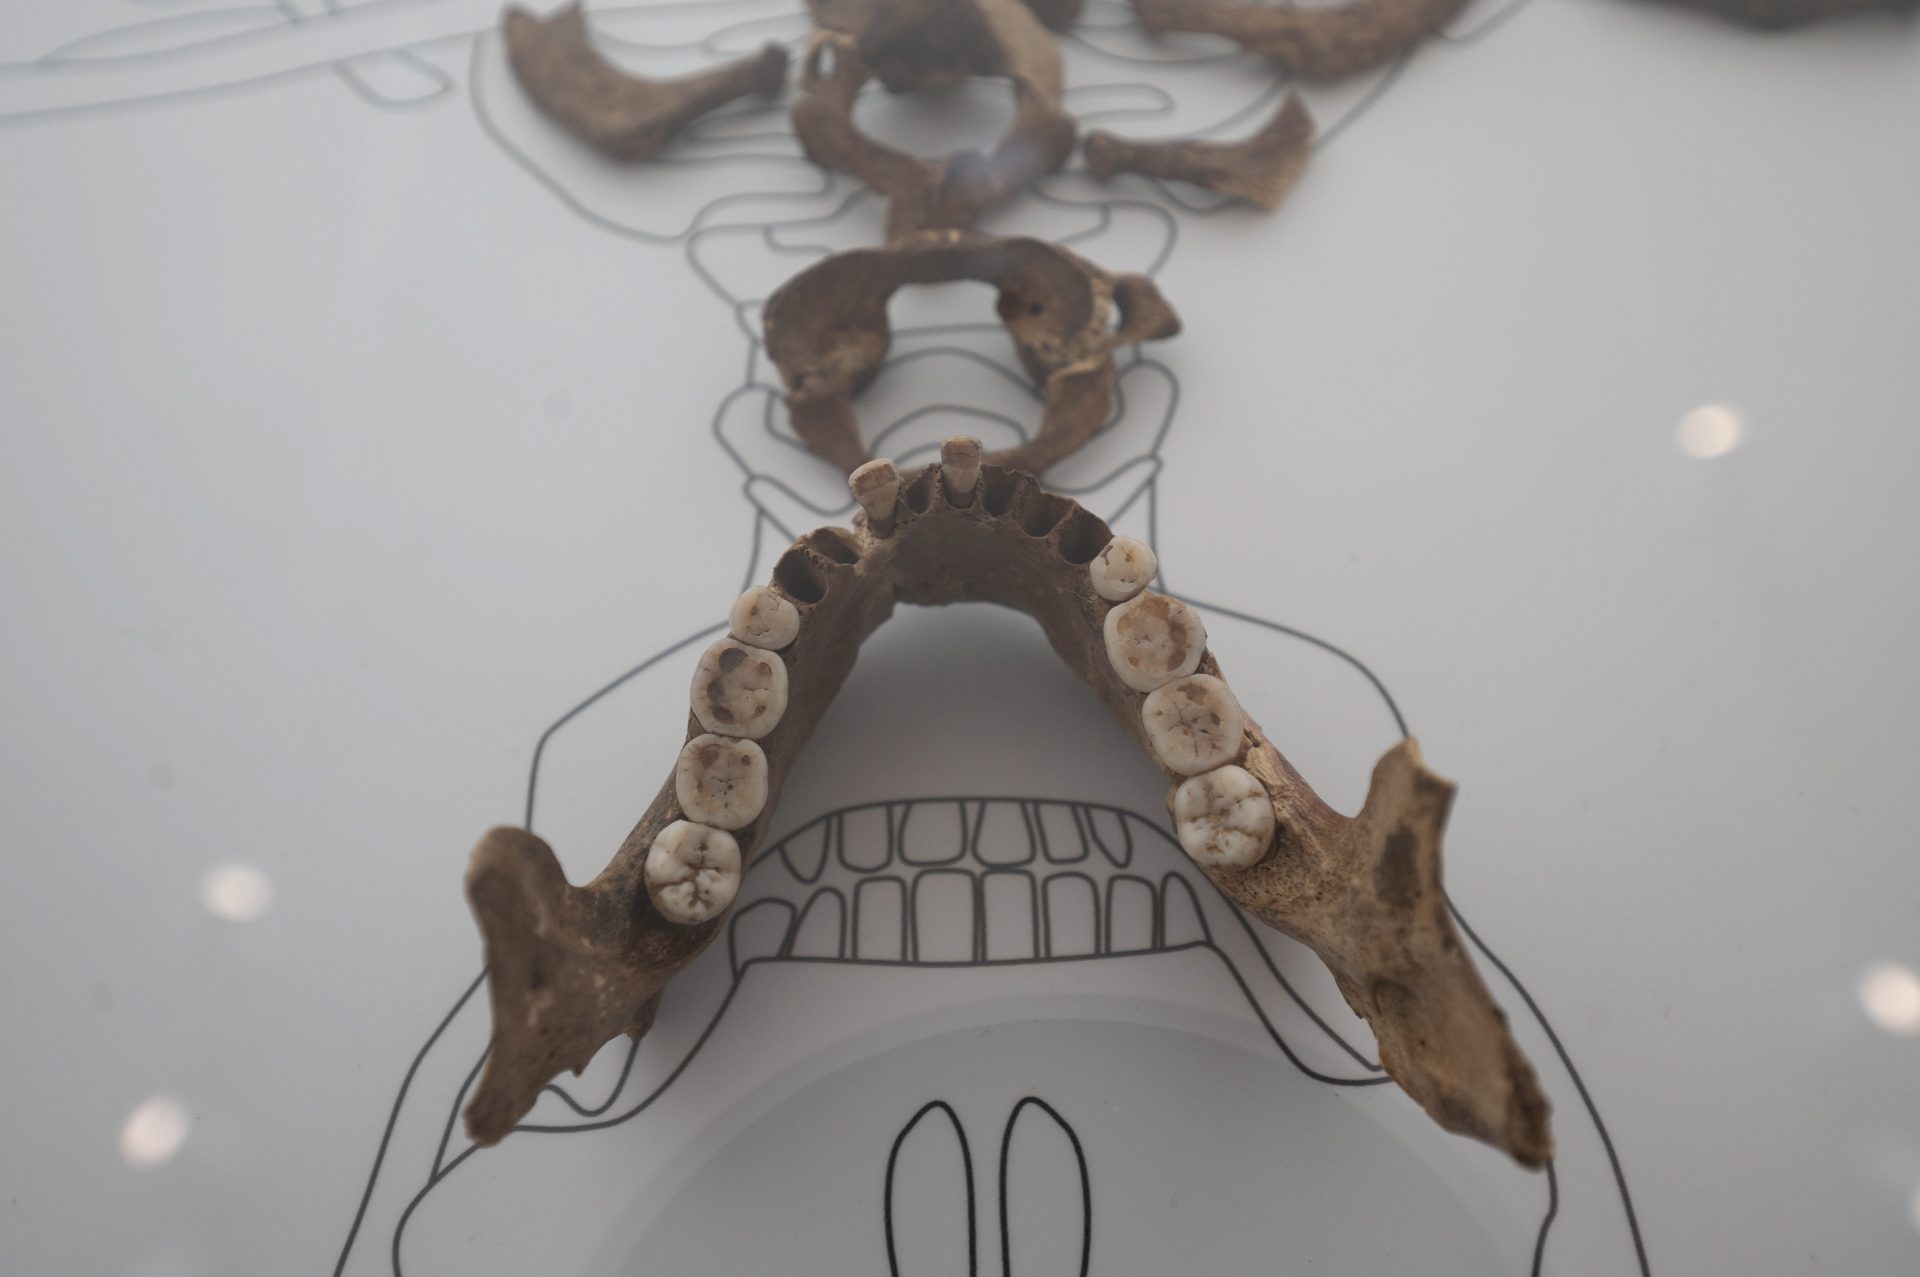 Fotografías del esqueleto de la Dama Roja expuesta en el Centro de Arte Rupestre de Cantabria. EFE/Pedro Puente Hoyos.